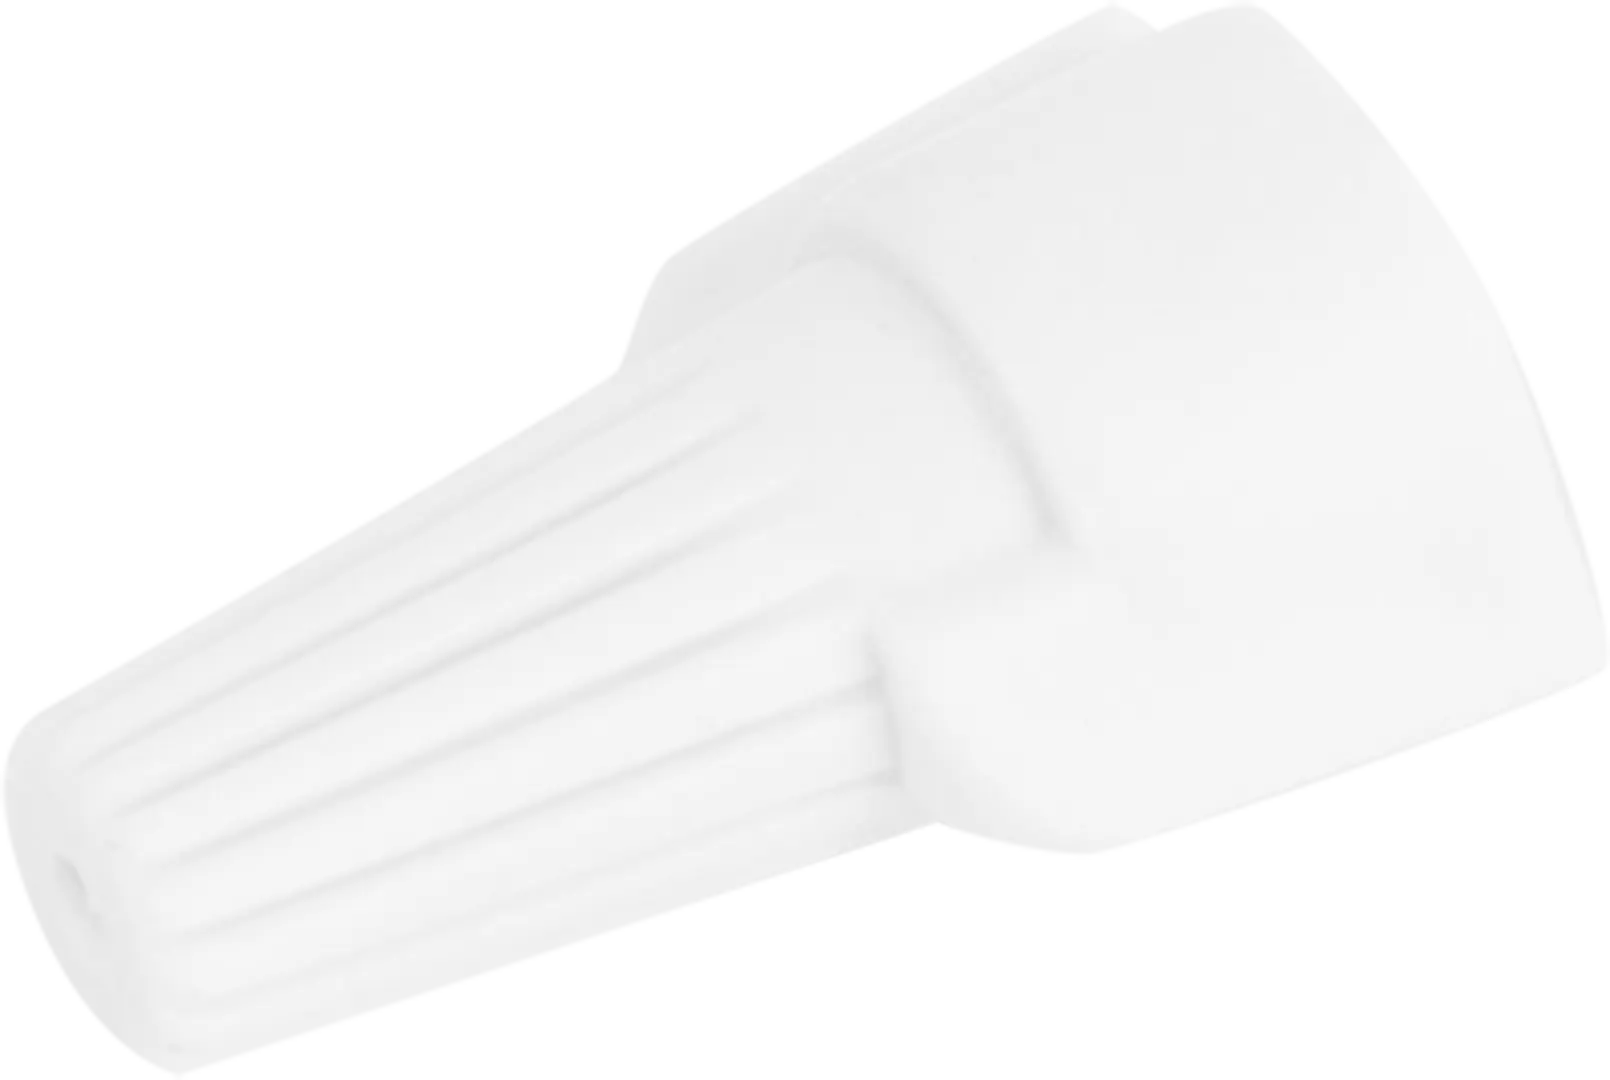 Соединительный изолирующий зажим Duwi СИЗ-Л-3 5-15 мм цвет белый 10 шт. соединительный изолирующий зажим duwi сиз 2 2 5 4 5 мм синий 10 шт